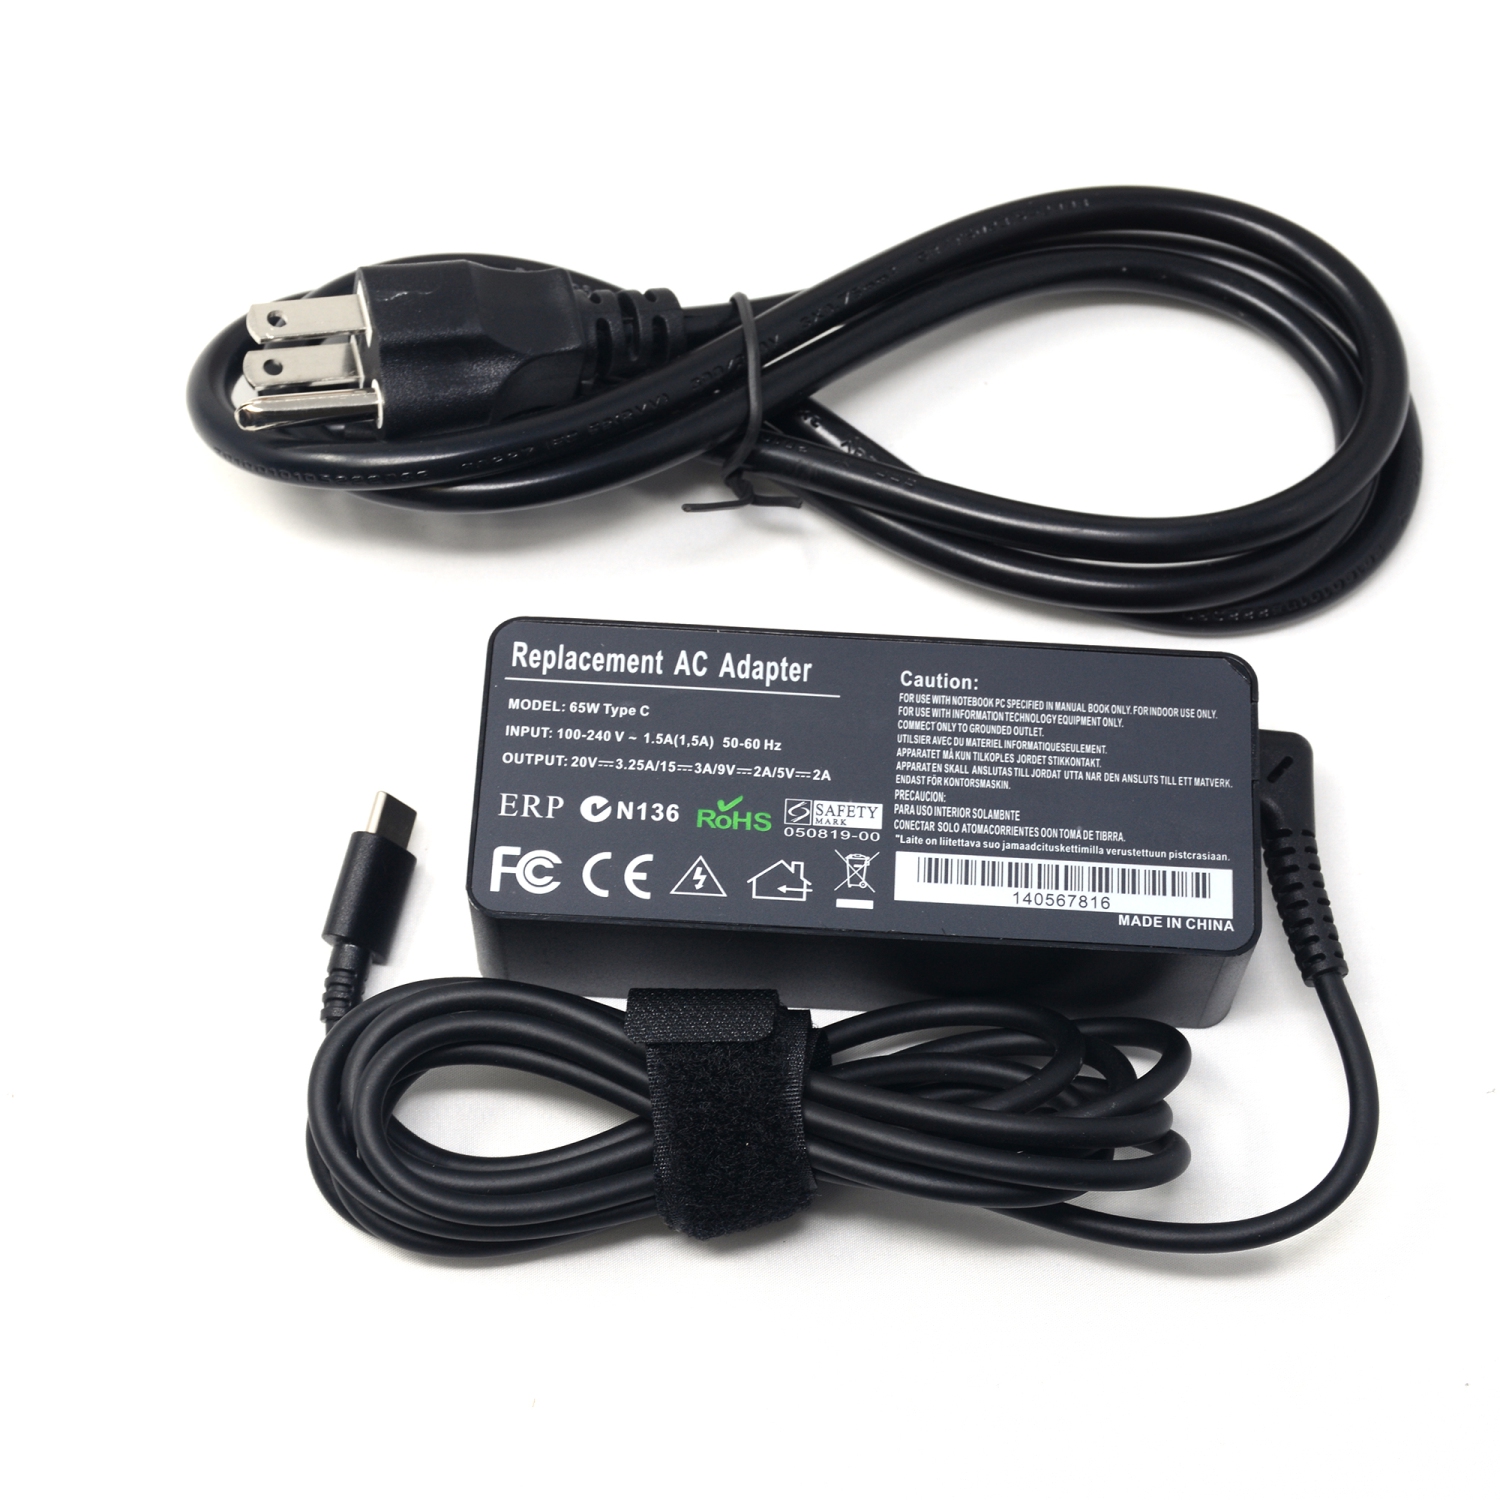 Chargeur pour Lenovo Thinkpad 65W USB-C Ordinateur Portable pour